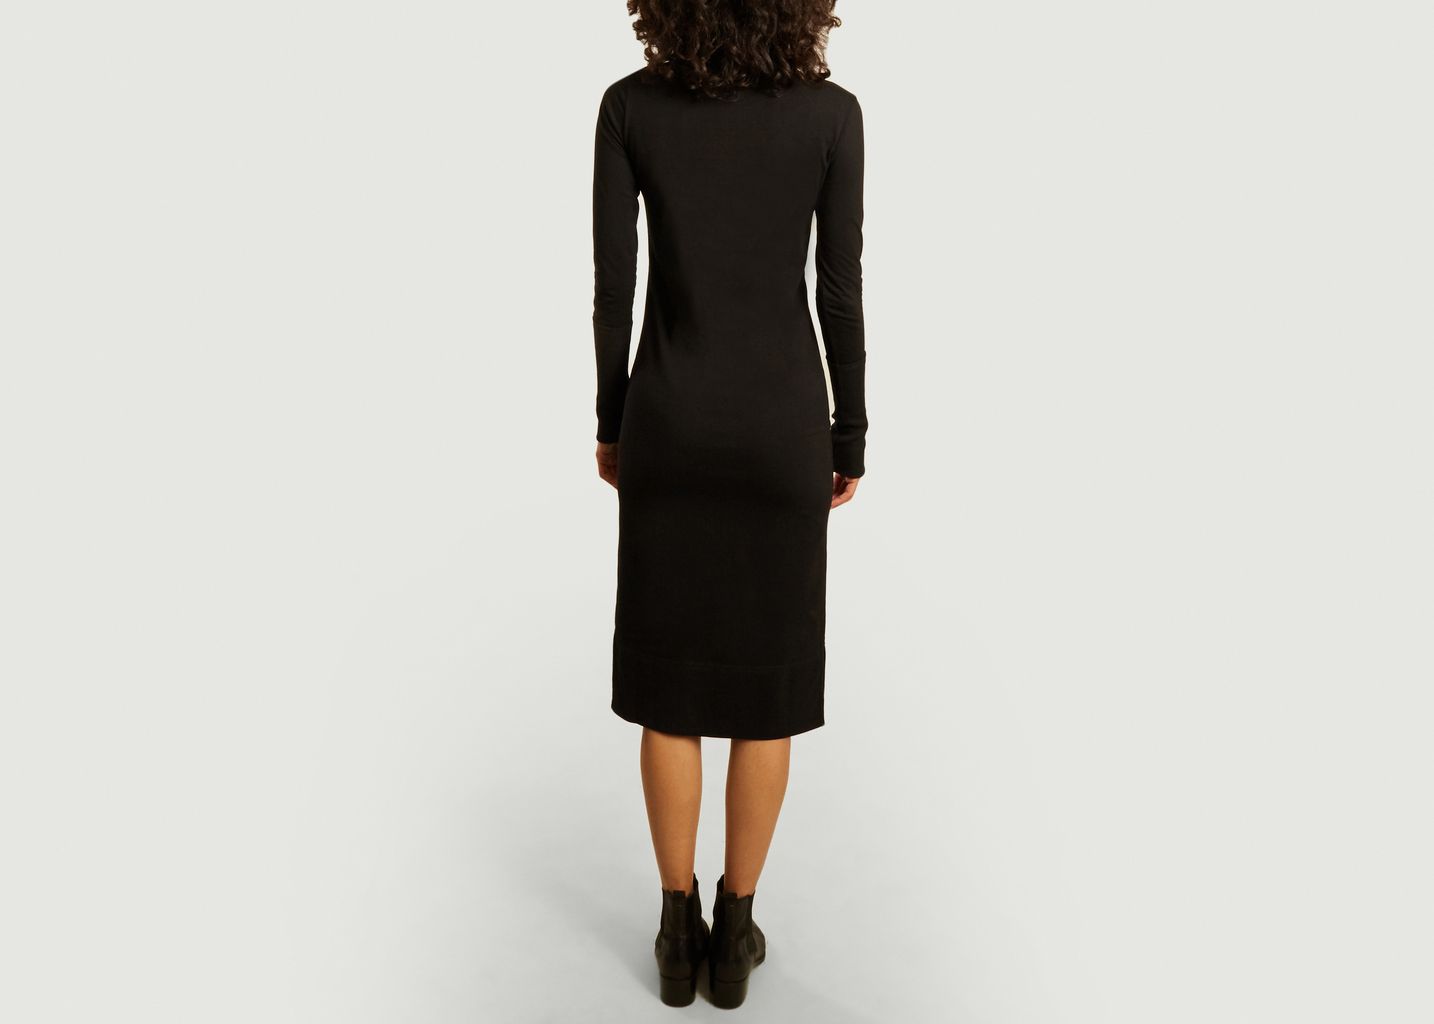 Nina turtleneck long sleeves mid-length dress - Sarah de Saint Hubert